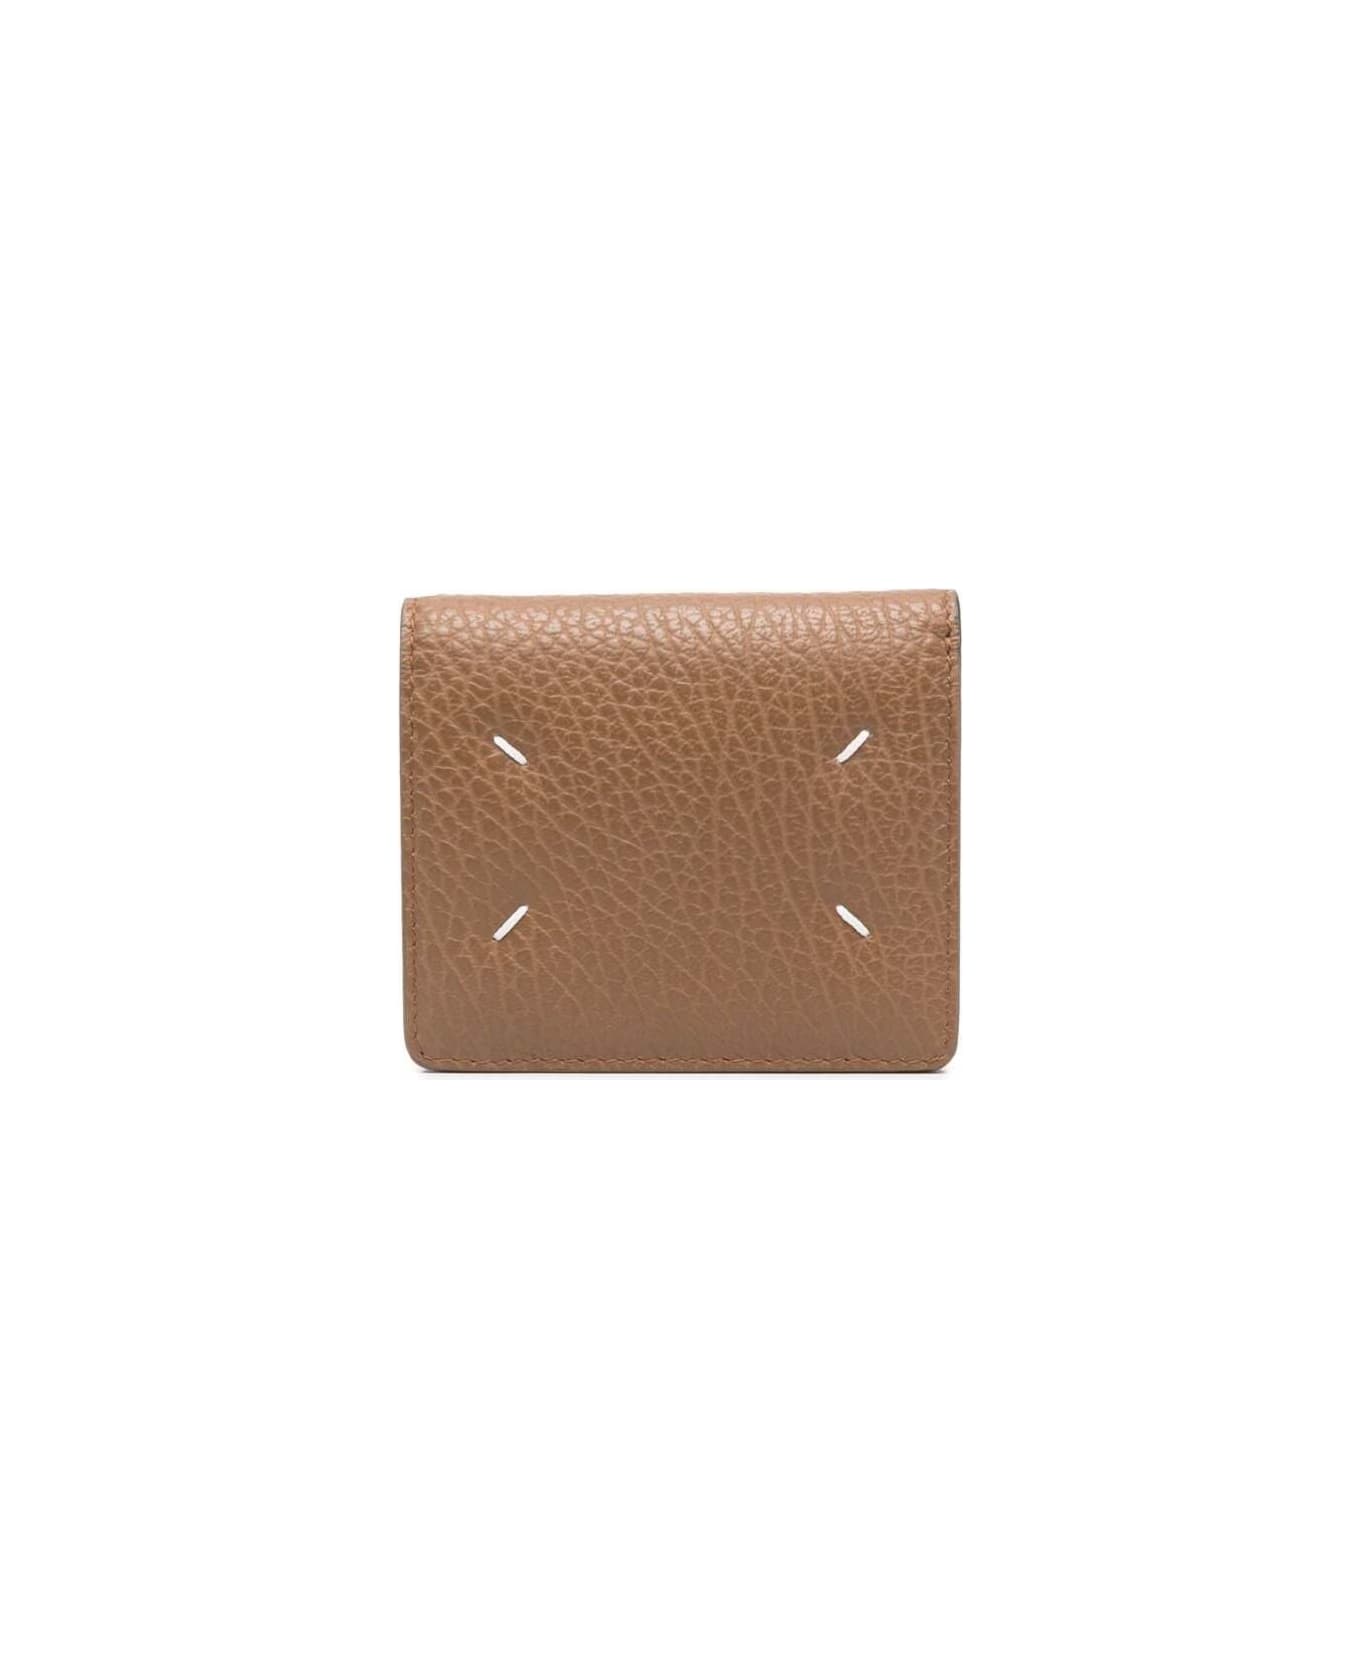 Maison Margiela Beige Bi-fold Wallet In Grainy Leather Woman Maison Margiela - Beige